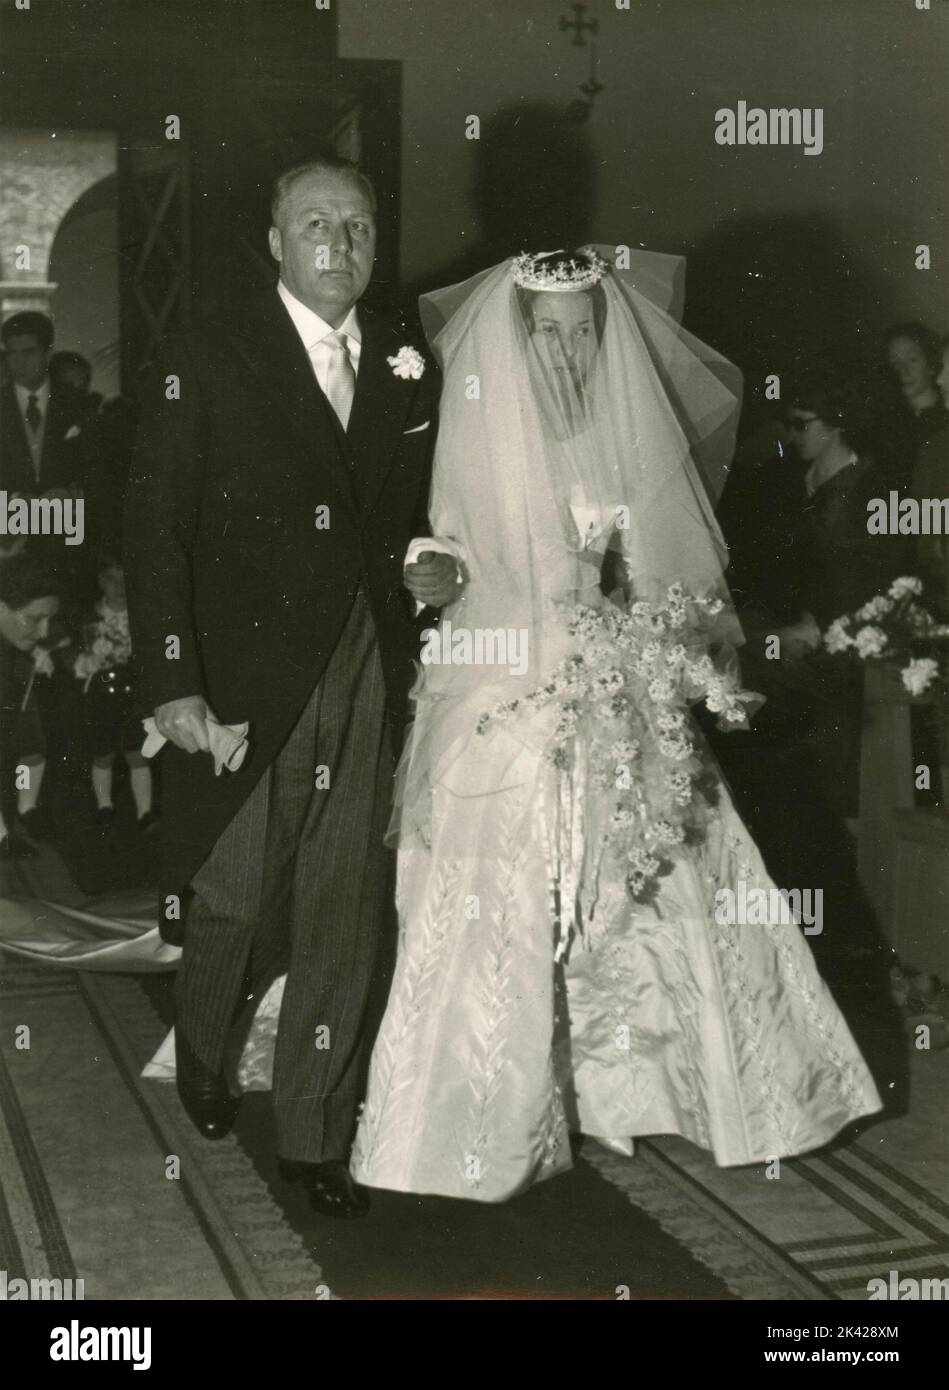 Der Vater der Braut bringt sie zum Altar der Kirche, Italien 1950s Stockfoto